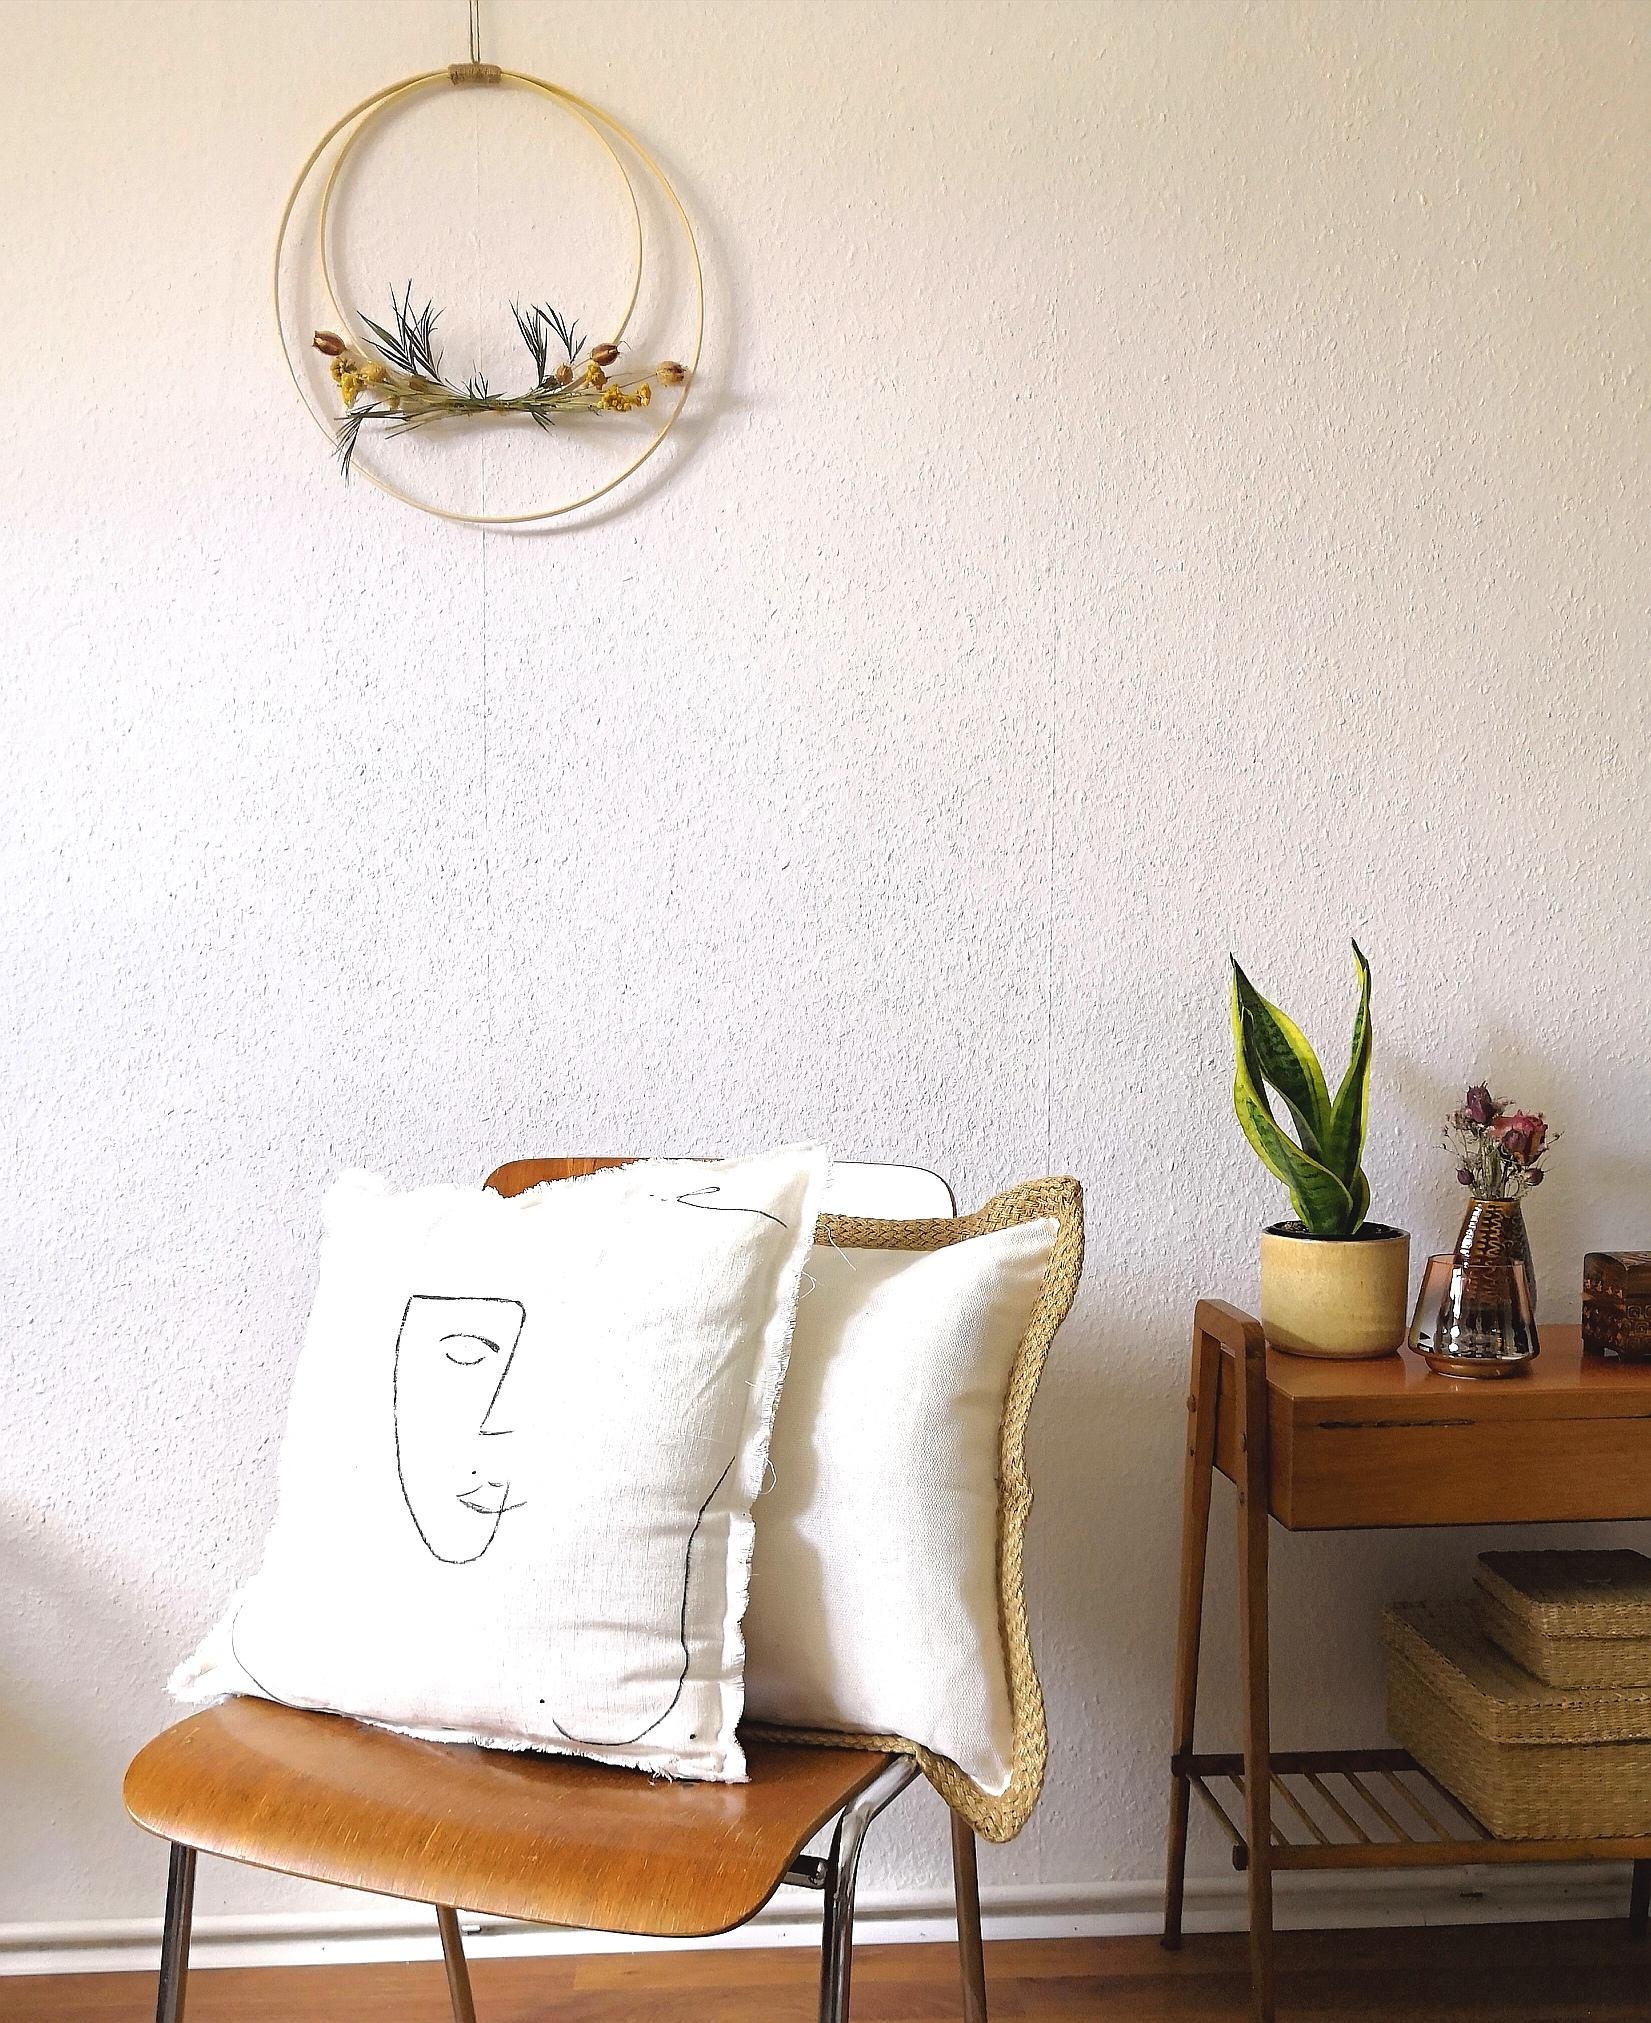 Ein kleiner aber feiner Blumenkranz als #wandgestaltung ♥️
#livingchallenge #couchstyle #vintageliving #diy